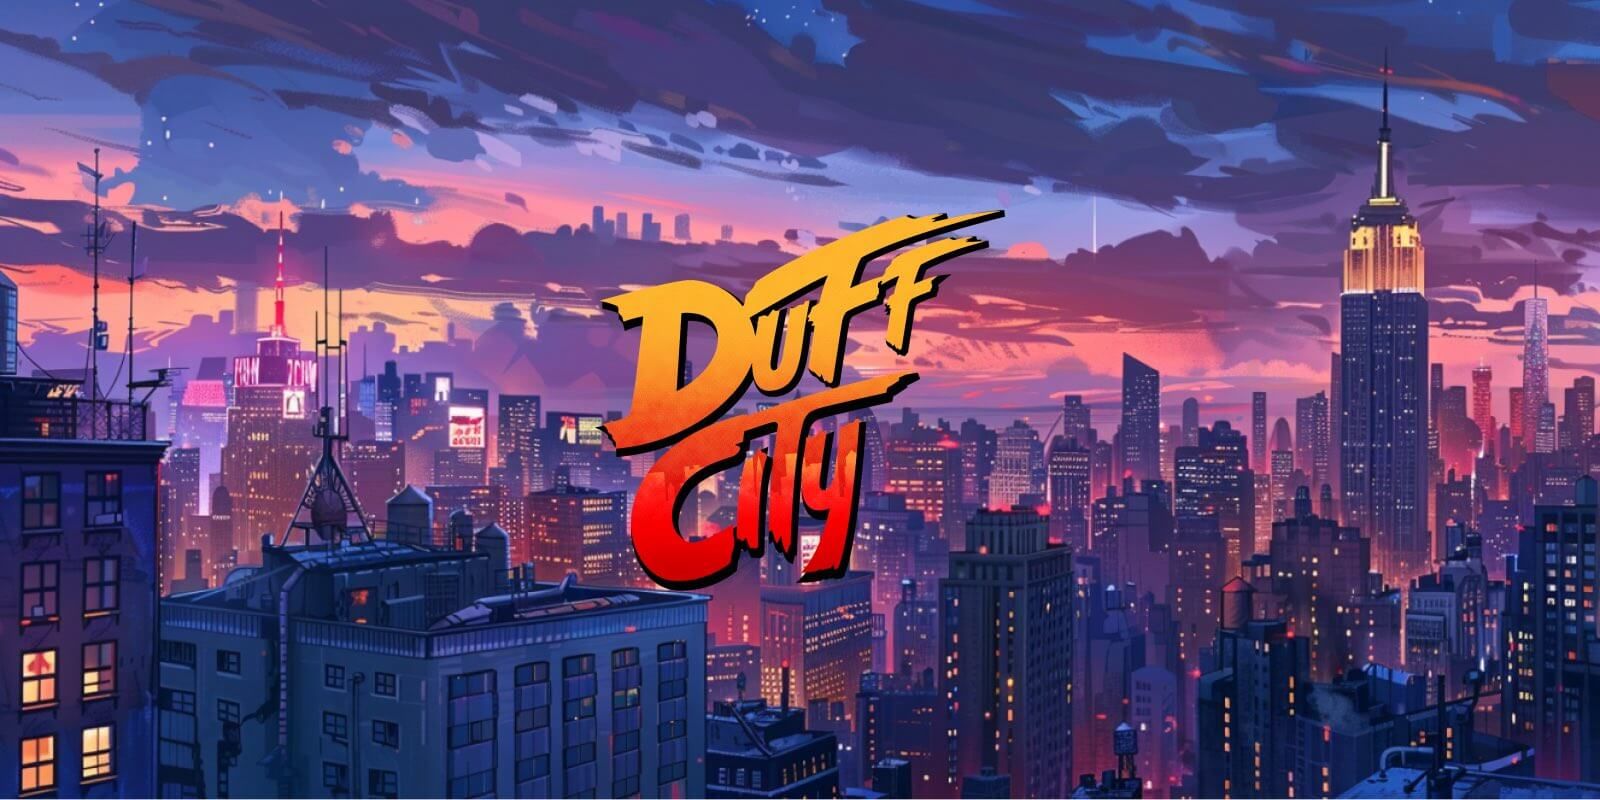 Smug To Host Duff City Tournament